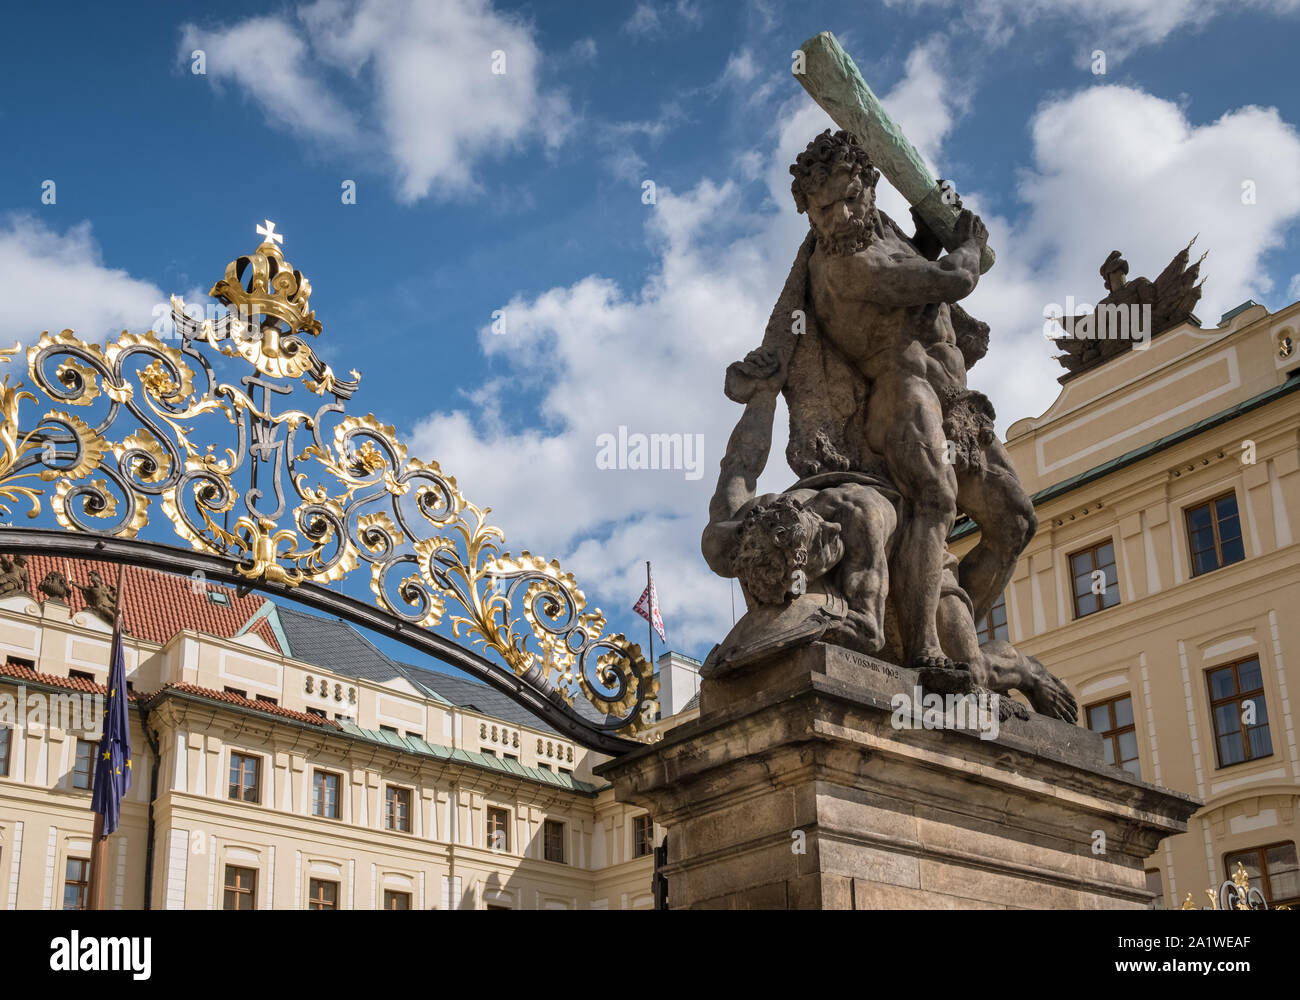 Le Château de Prague, Hradcany, Prague, République tchèque. 18ème siècle de grandes statues ornent le Titan lutte château entrée principale (aussi connu comme des géants de la porte). Banque D'Images